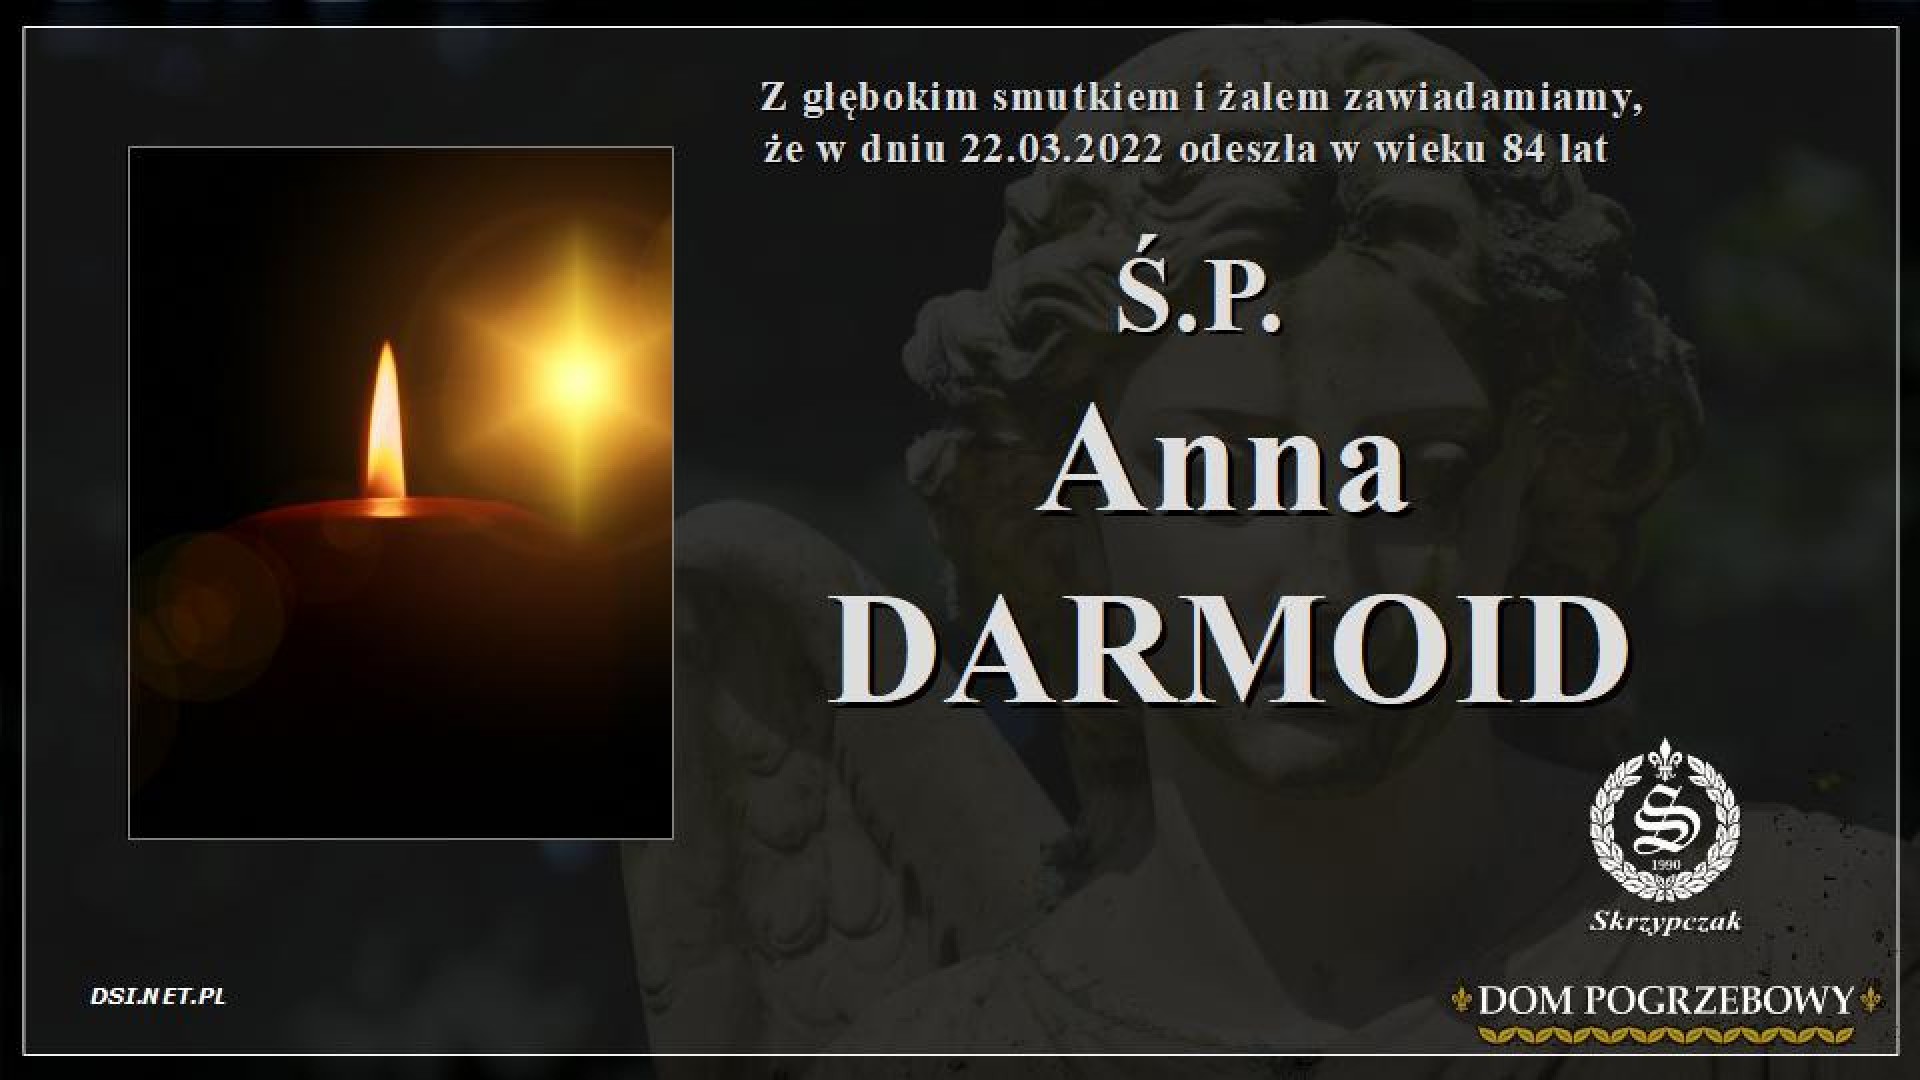 Ś.P Anna Darmoid